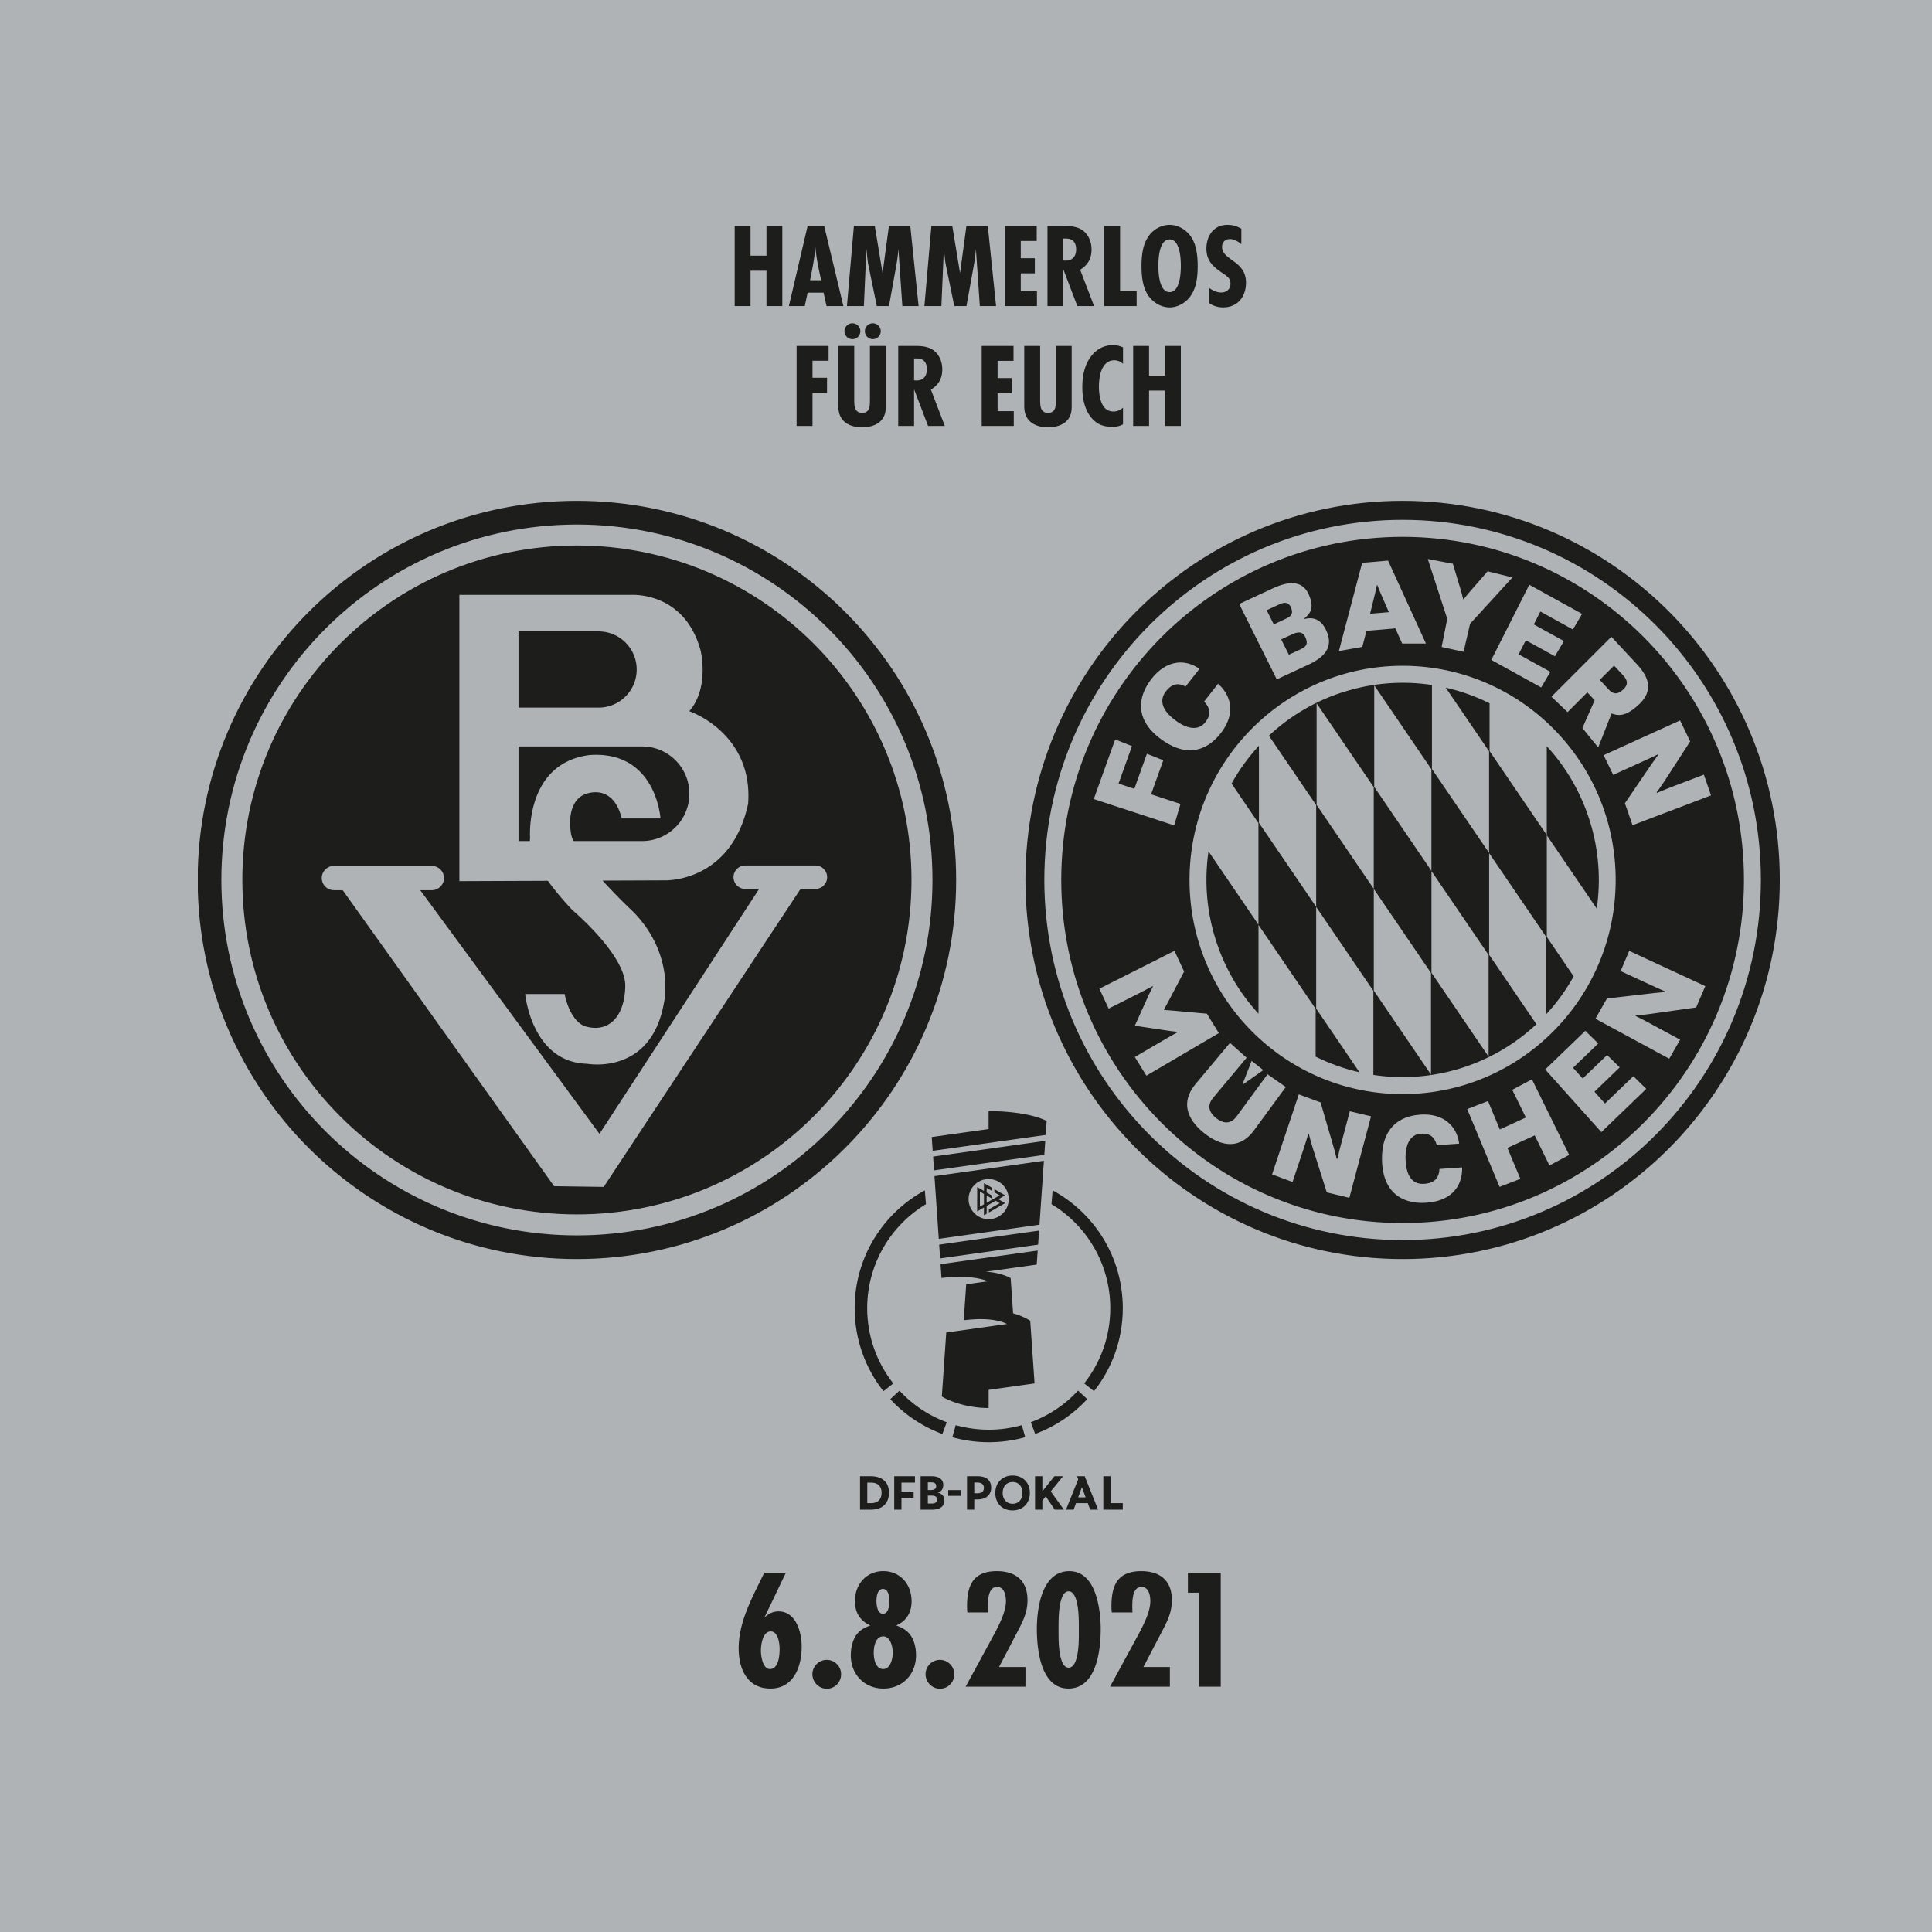 DFB-Pokal Shirt "HAMMERLOS FÜR EUCH"